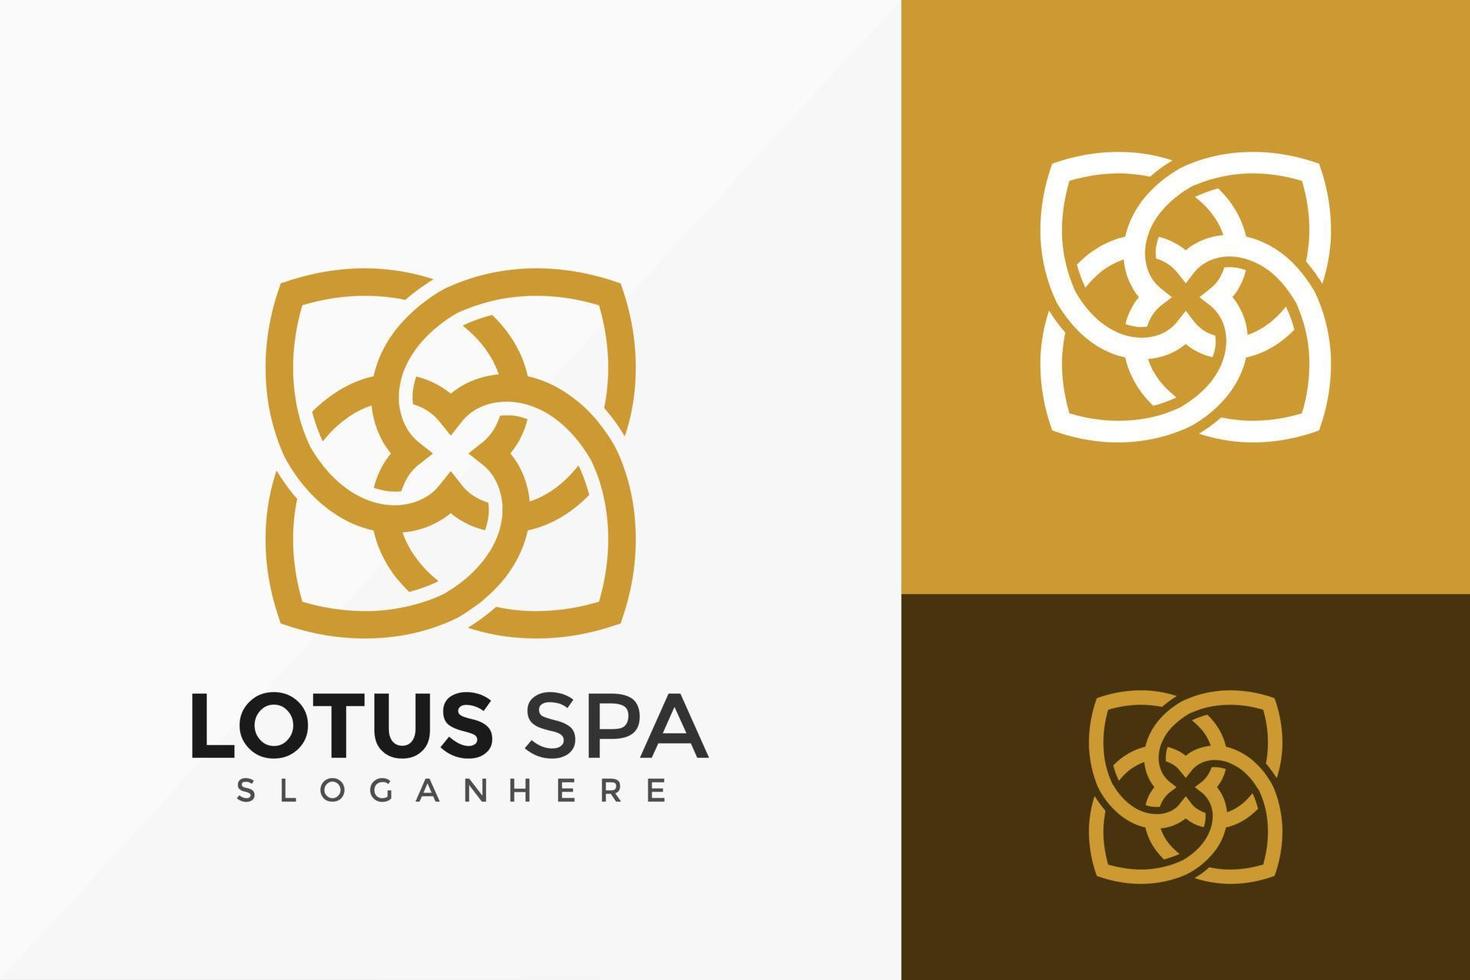 lotus spa modern logo vector ontwerp. abstract embleem, ontwerpen concept, logo's, logo element voor sjabloon.